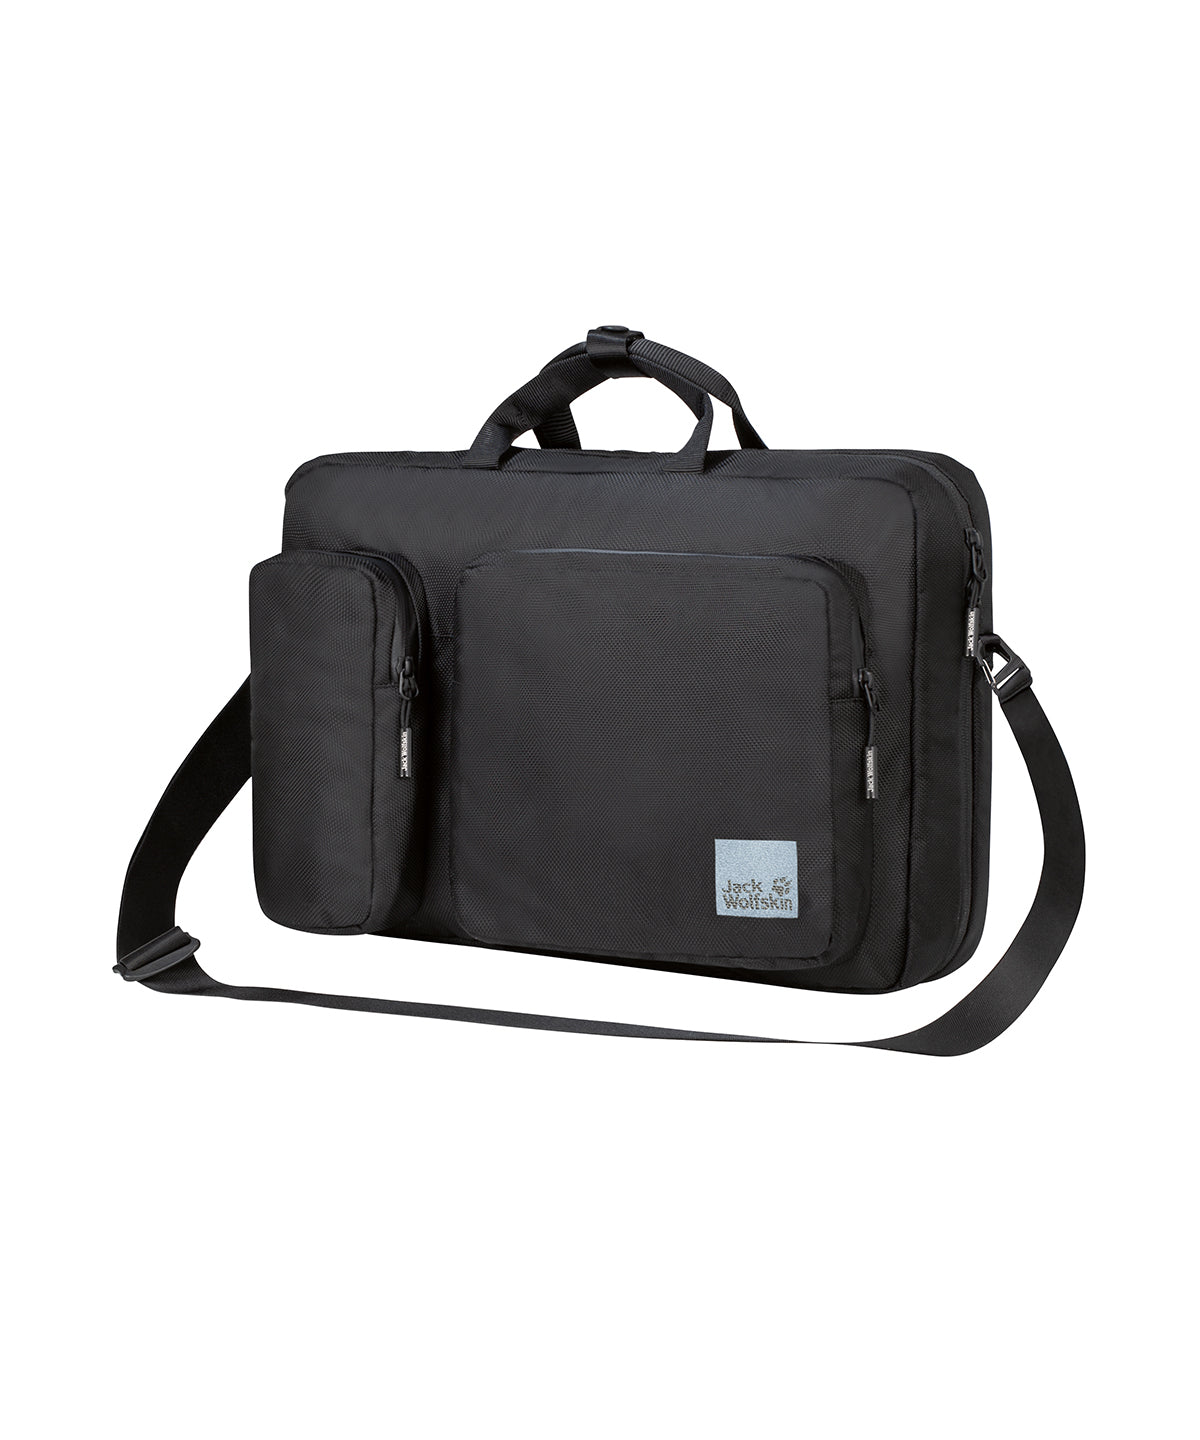 Personalised Bags - Black Jack Wolfskin 2-in-1 flip bag (NL)